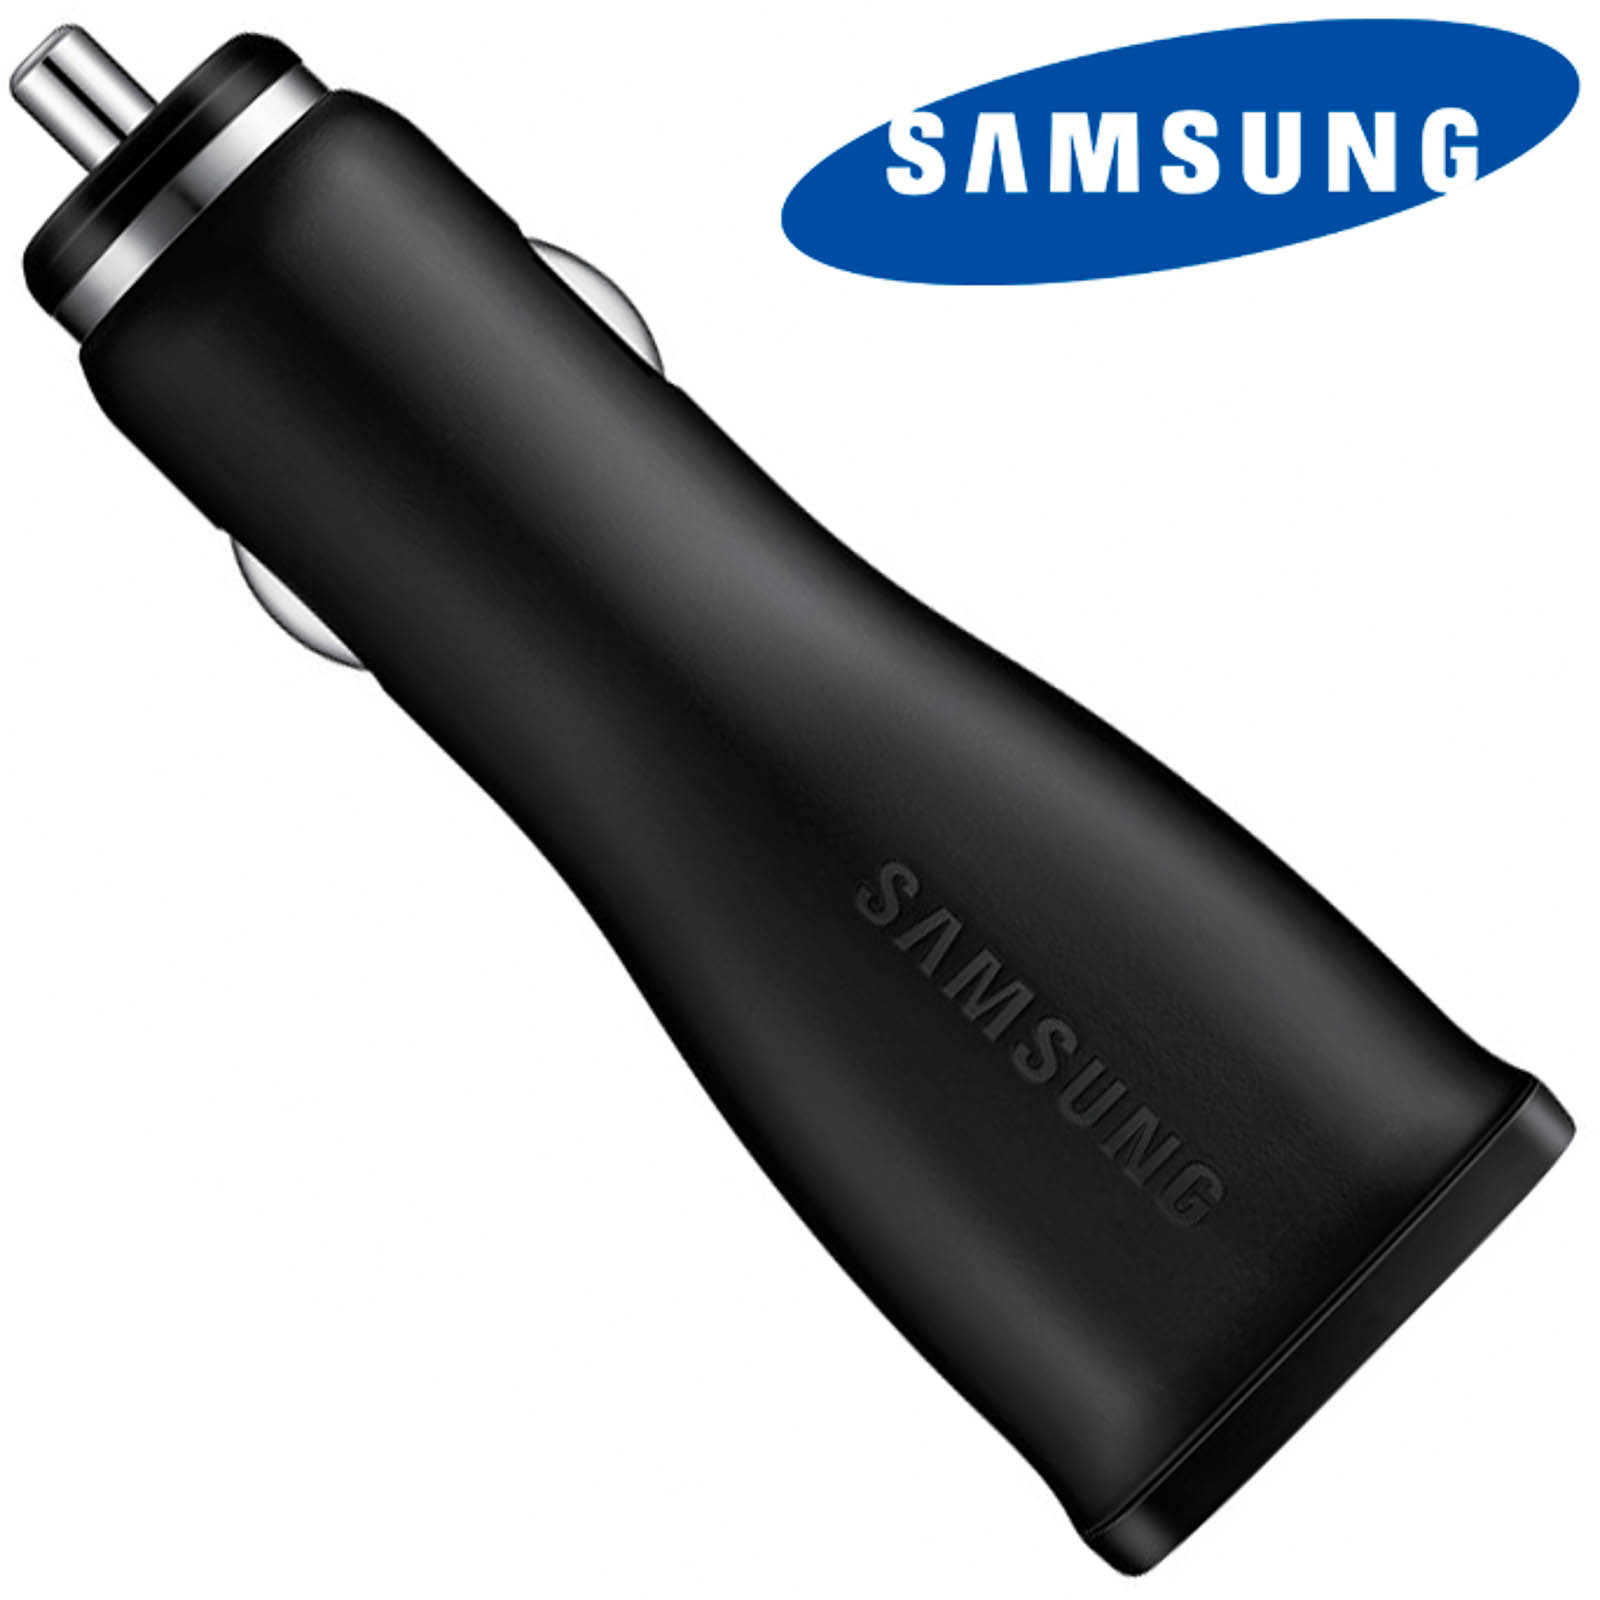 SAMSUNG EPLN915 Netzteil, KFZ-Ladegeräte Micro-USB Samsung, Schwarz 2A Wand-Ladegerät